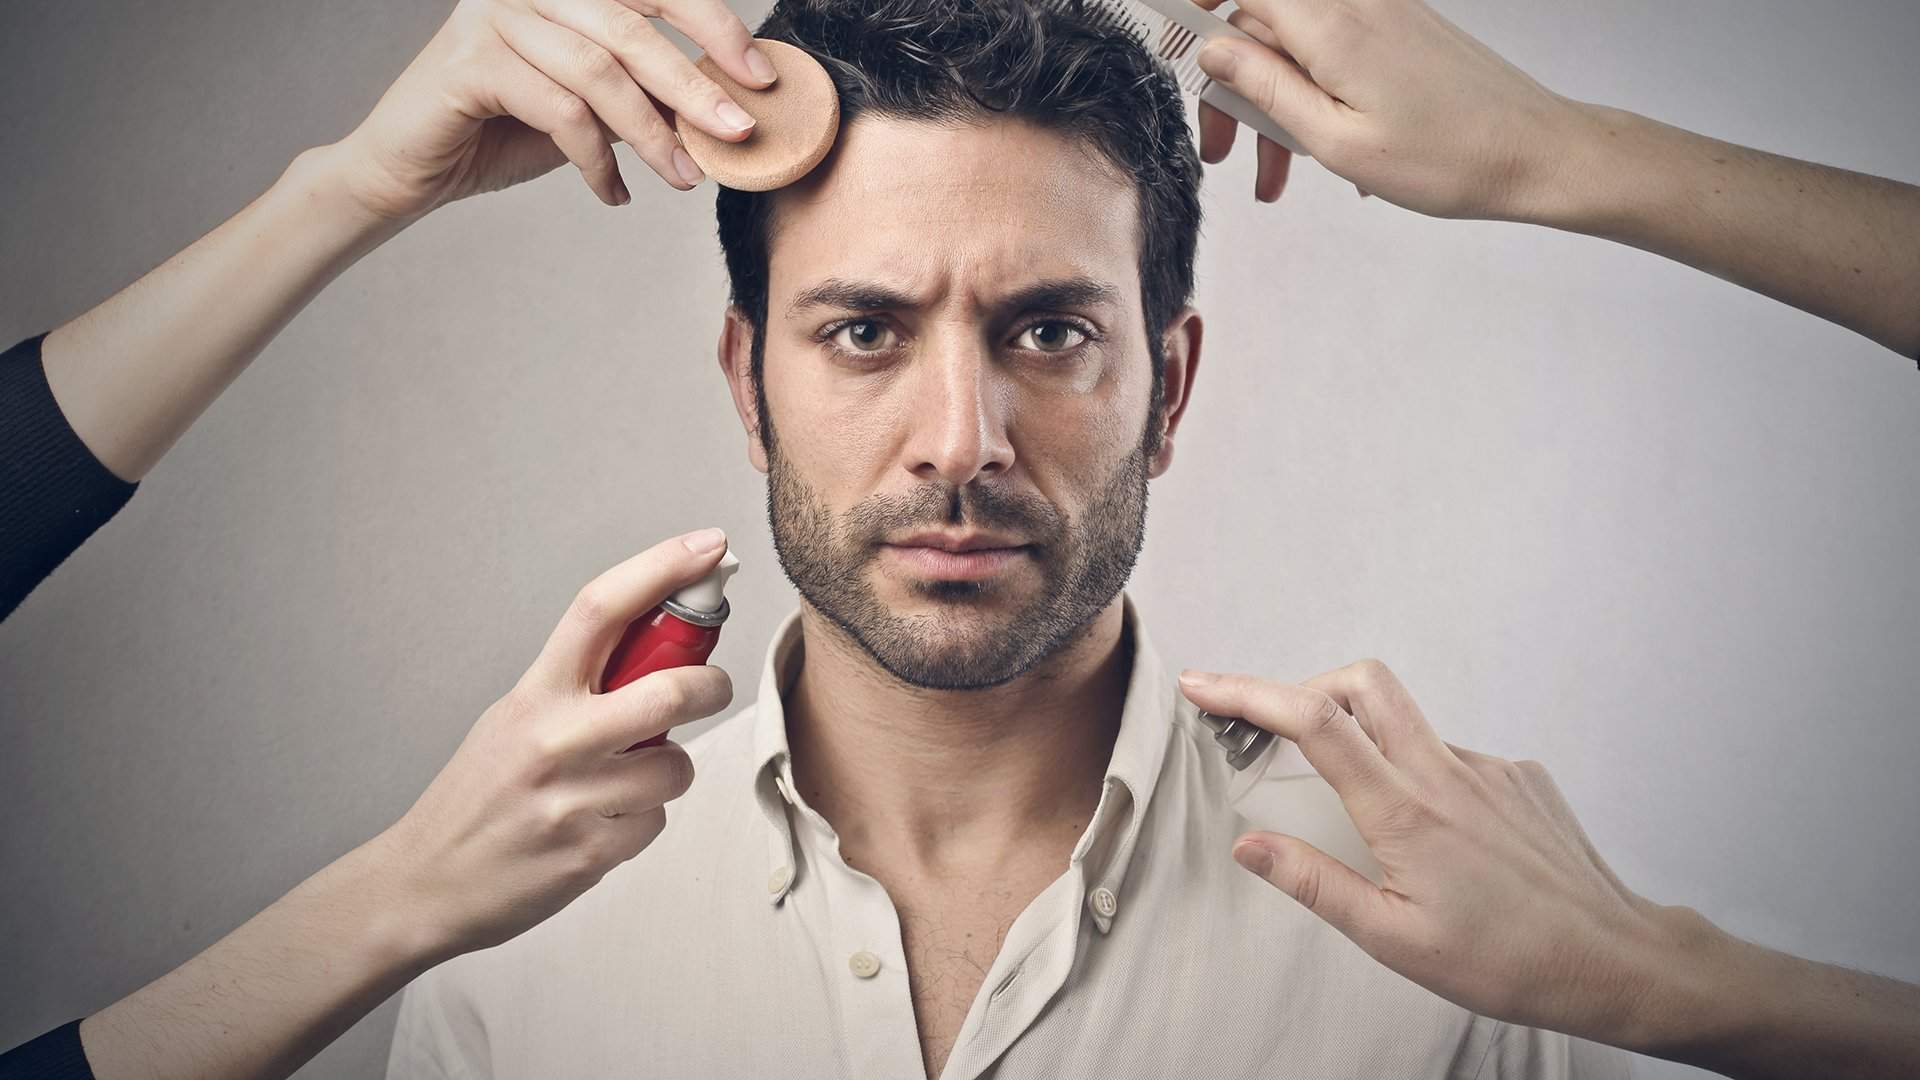 Квир на весь мир: зачем мужчины занялись макияжем | Статьи | Известия